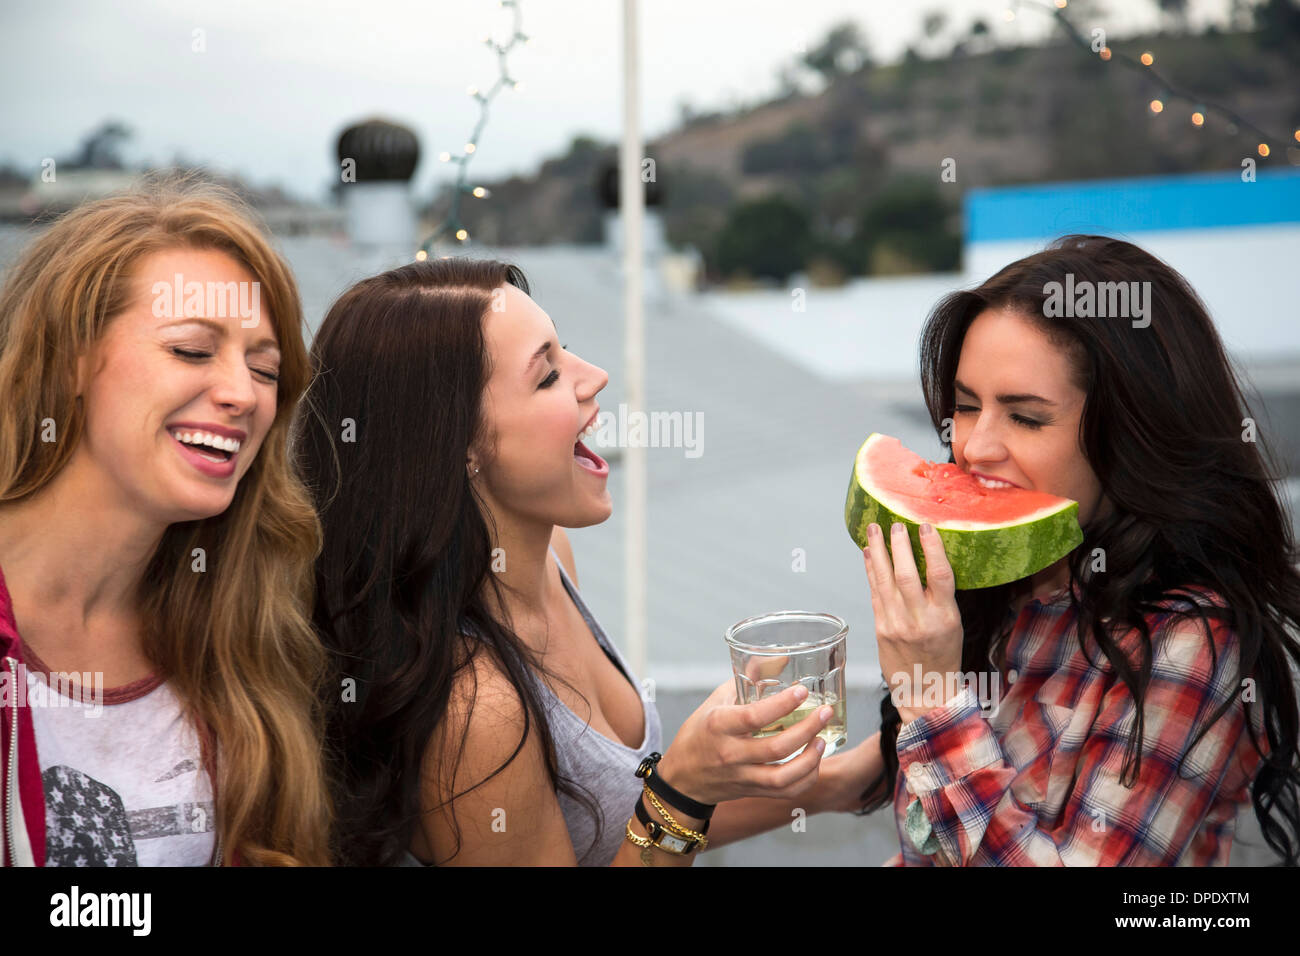 Drei junge Frauen am Grill mit großer Scheibe Melone Stockfoto